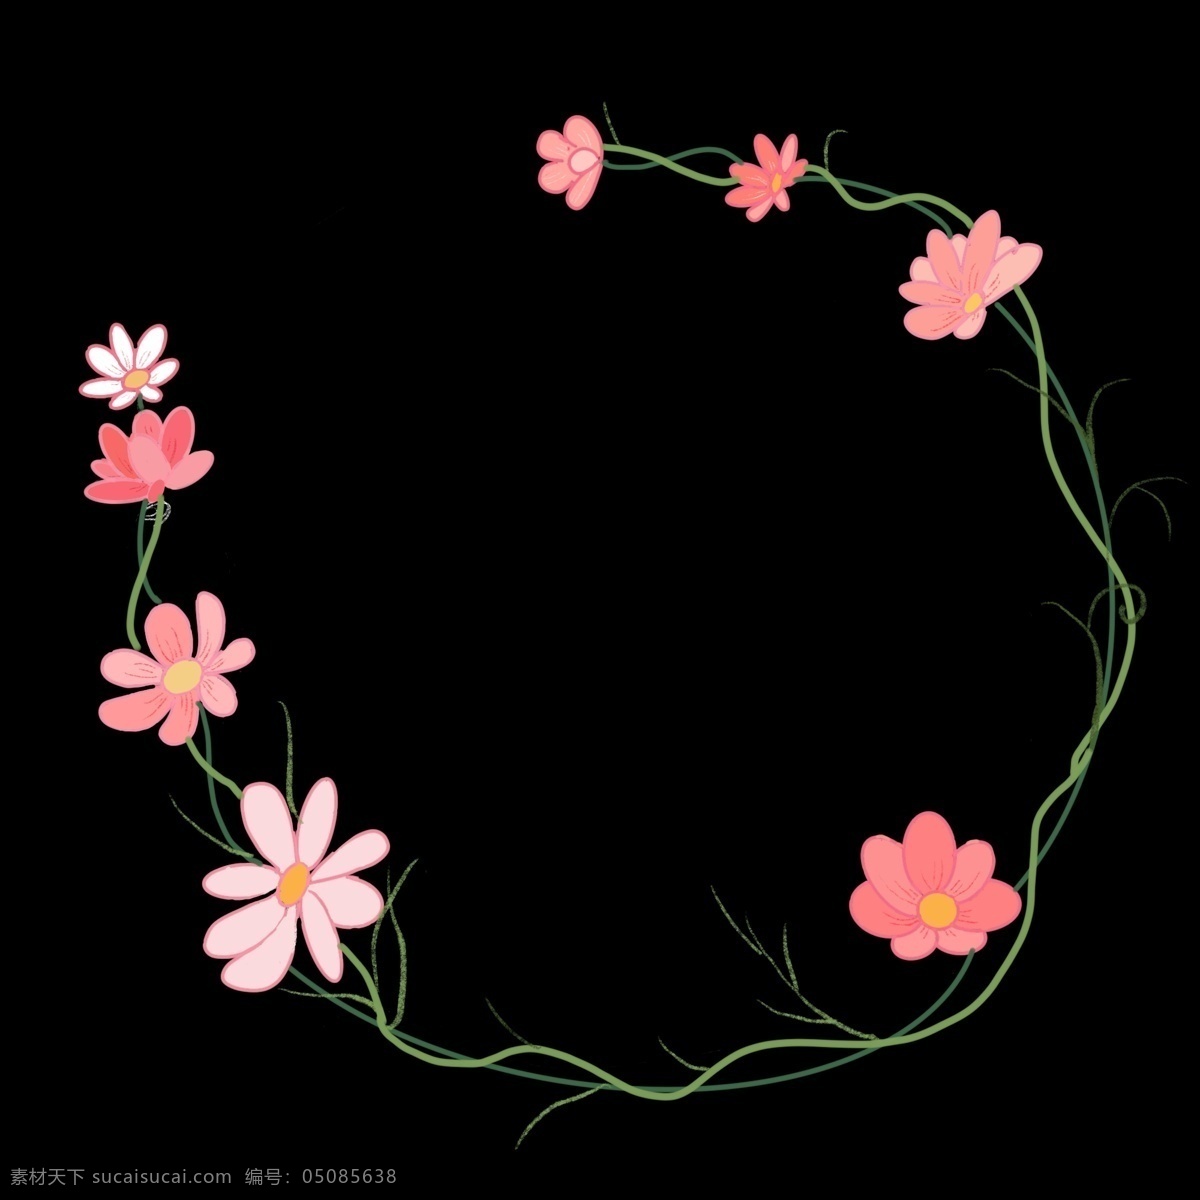 粉色 花朵 花 藤 边框 粉色的花朵 卡通边框 小物边框 植物边框 叶子边框 美丽边框 粉色的花藤